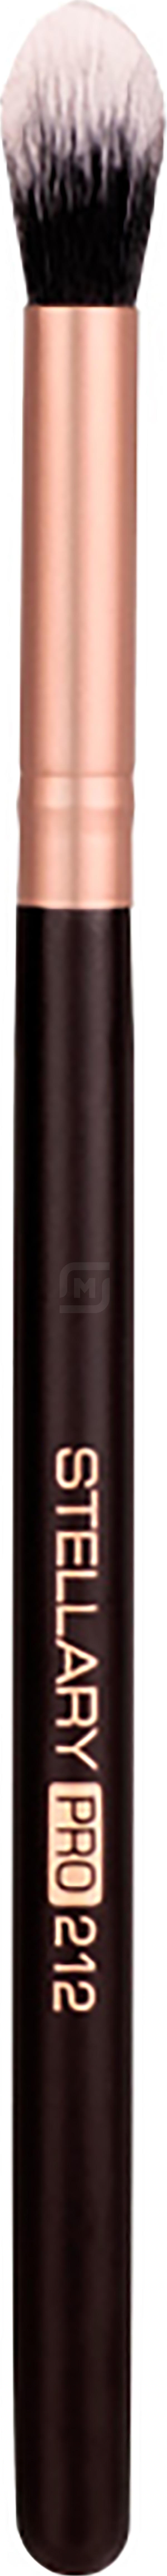 Кисть для теней STELLARY Brush №212 синтетическая, черная luxvisage кисть косметическая для пудровых текстур